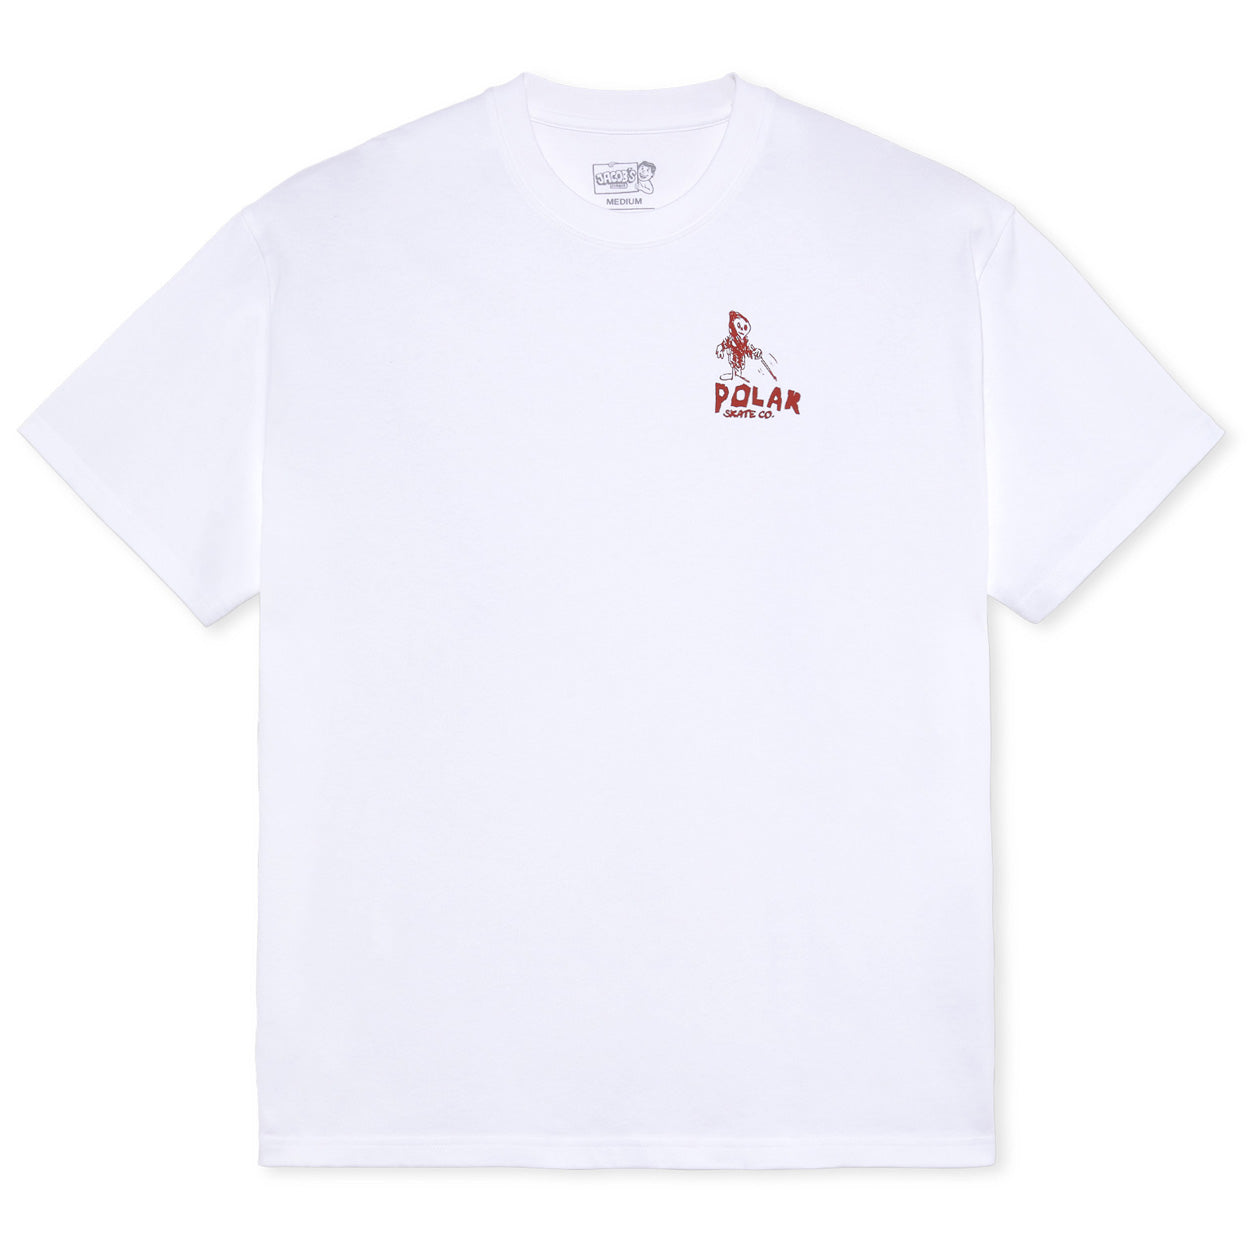 Polar Reaper T-Shirt - White - Mens Skate Brand T-Shirt by Polar